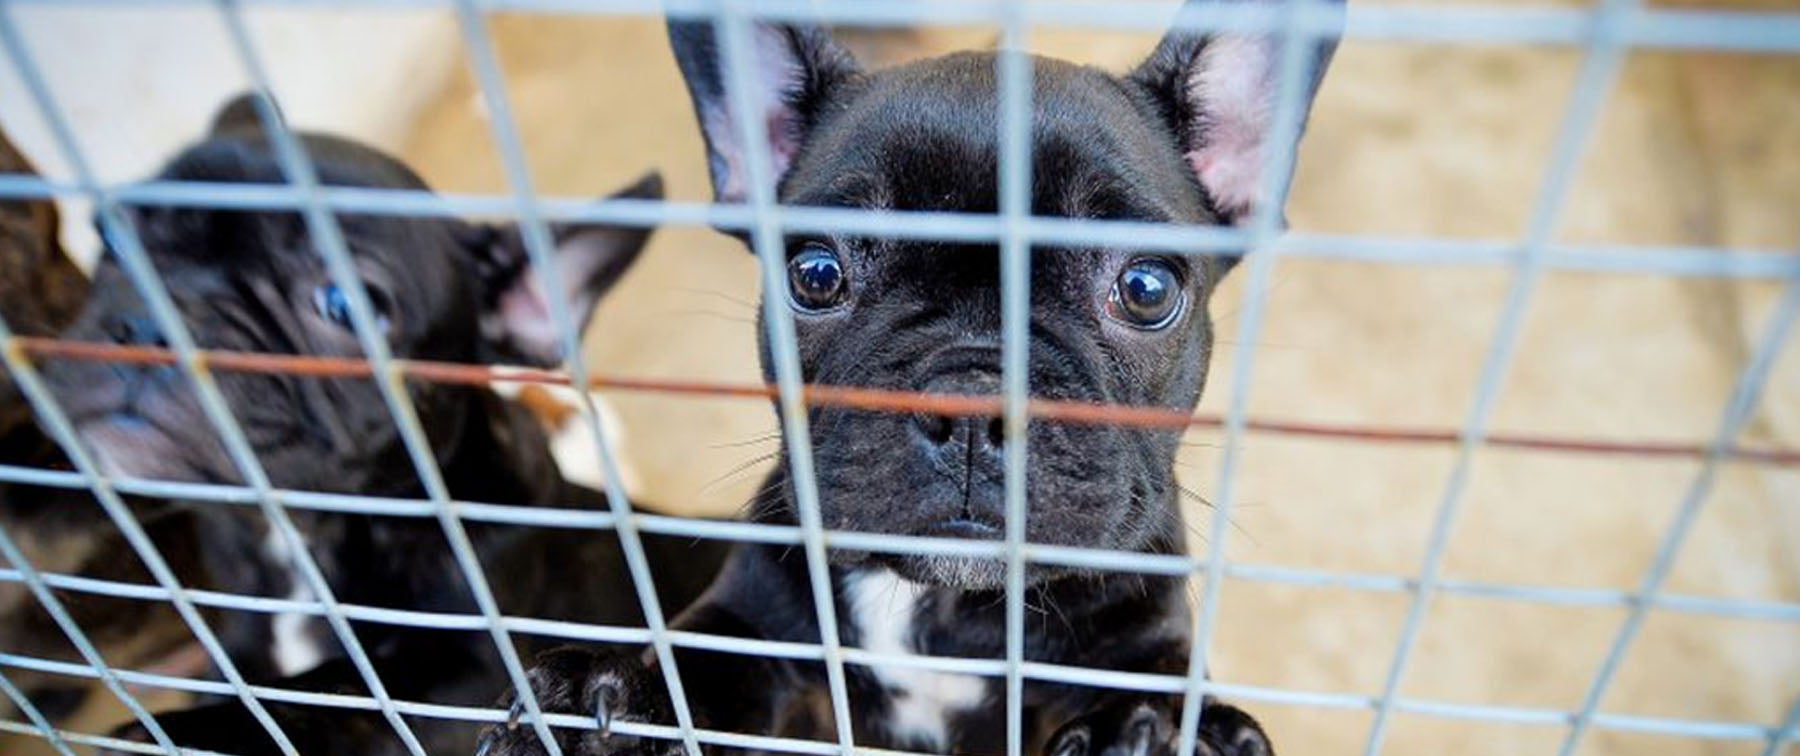 Scotland's Largest Puppy Farm Shut down